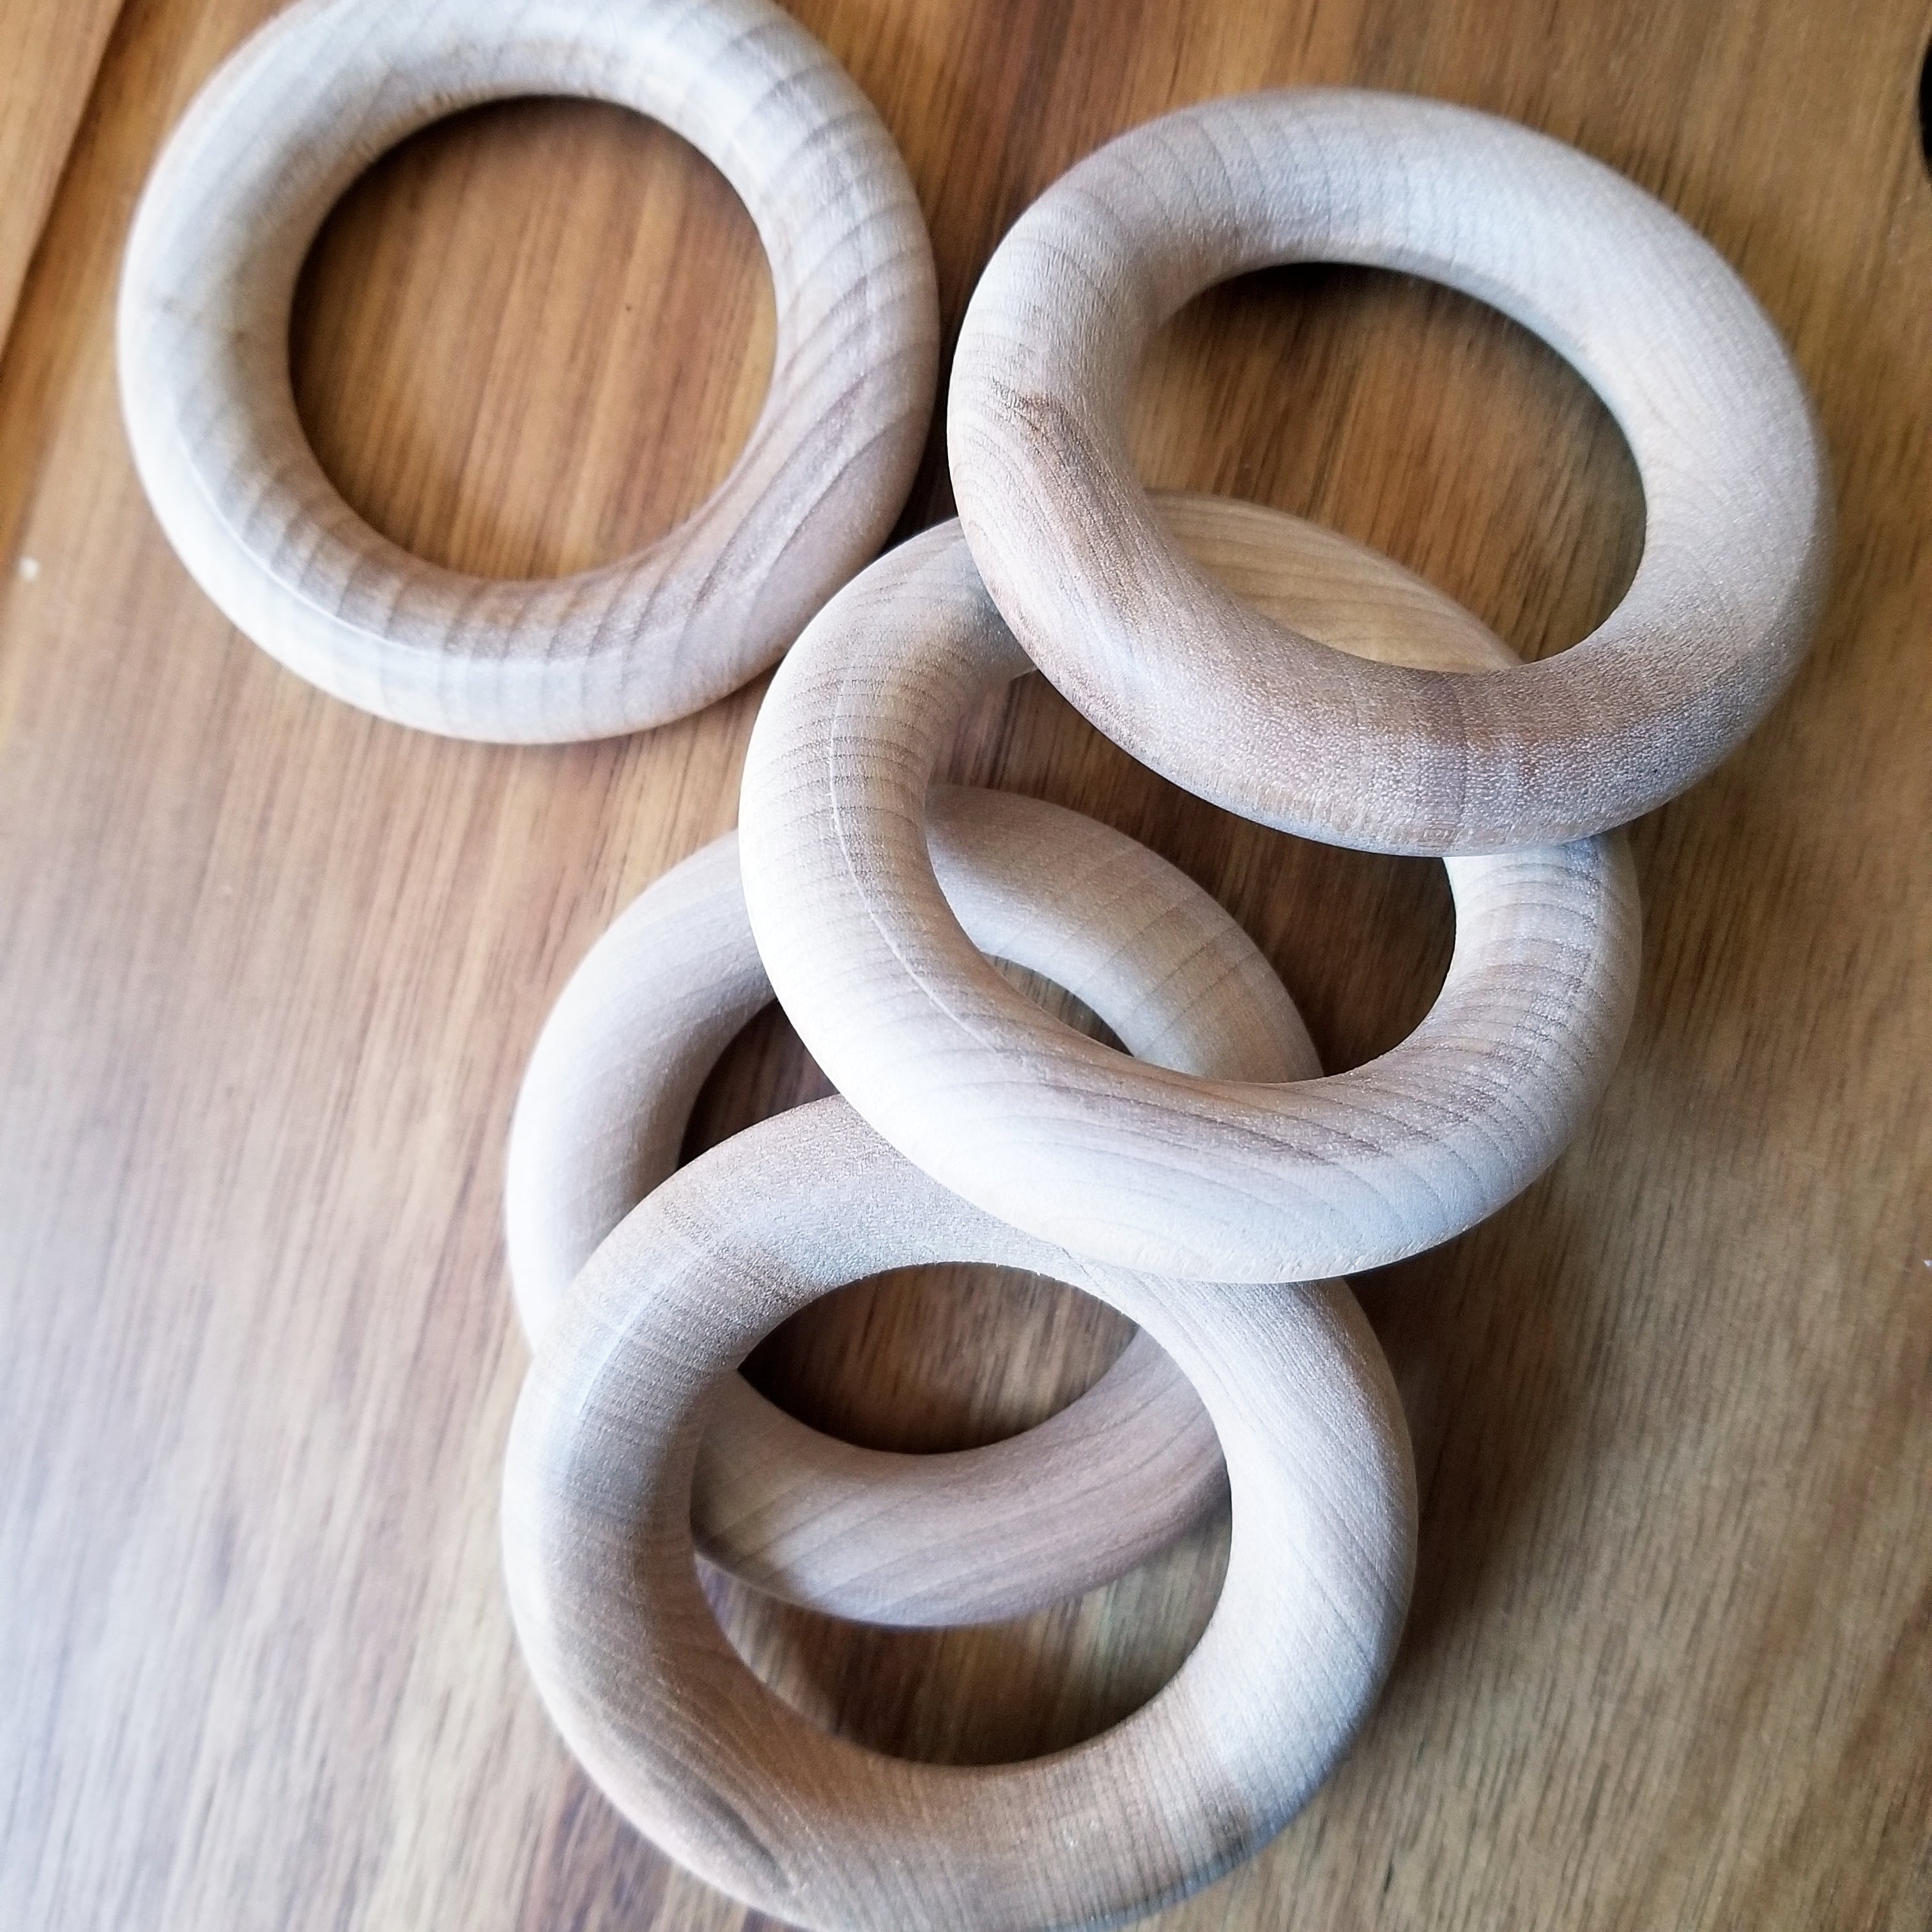 eternium crafting rings